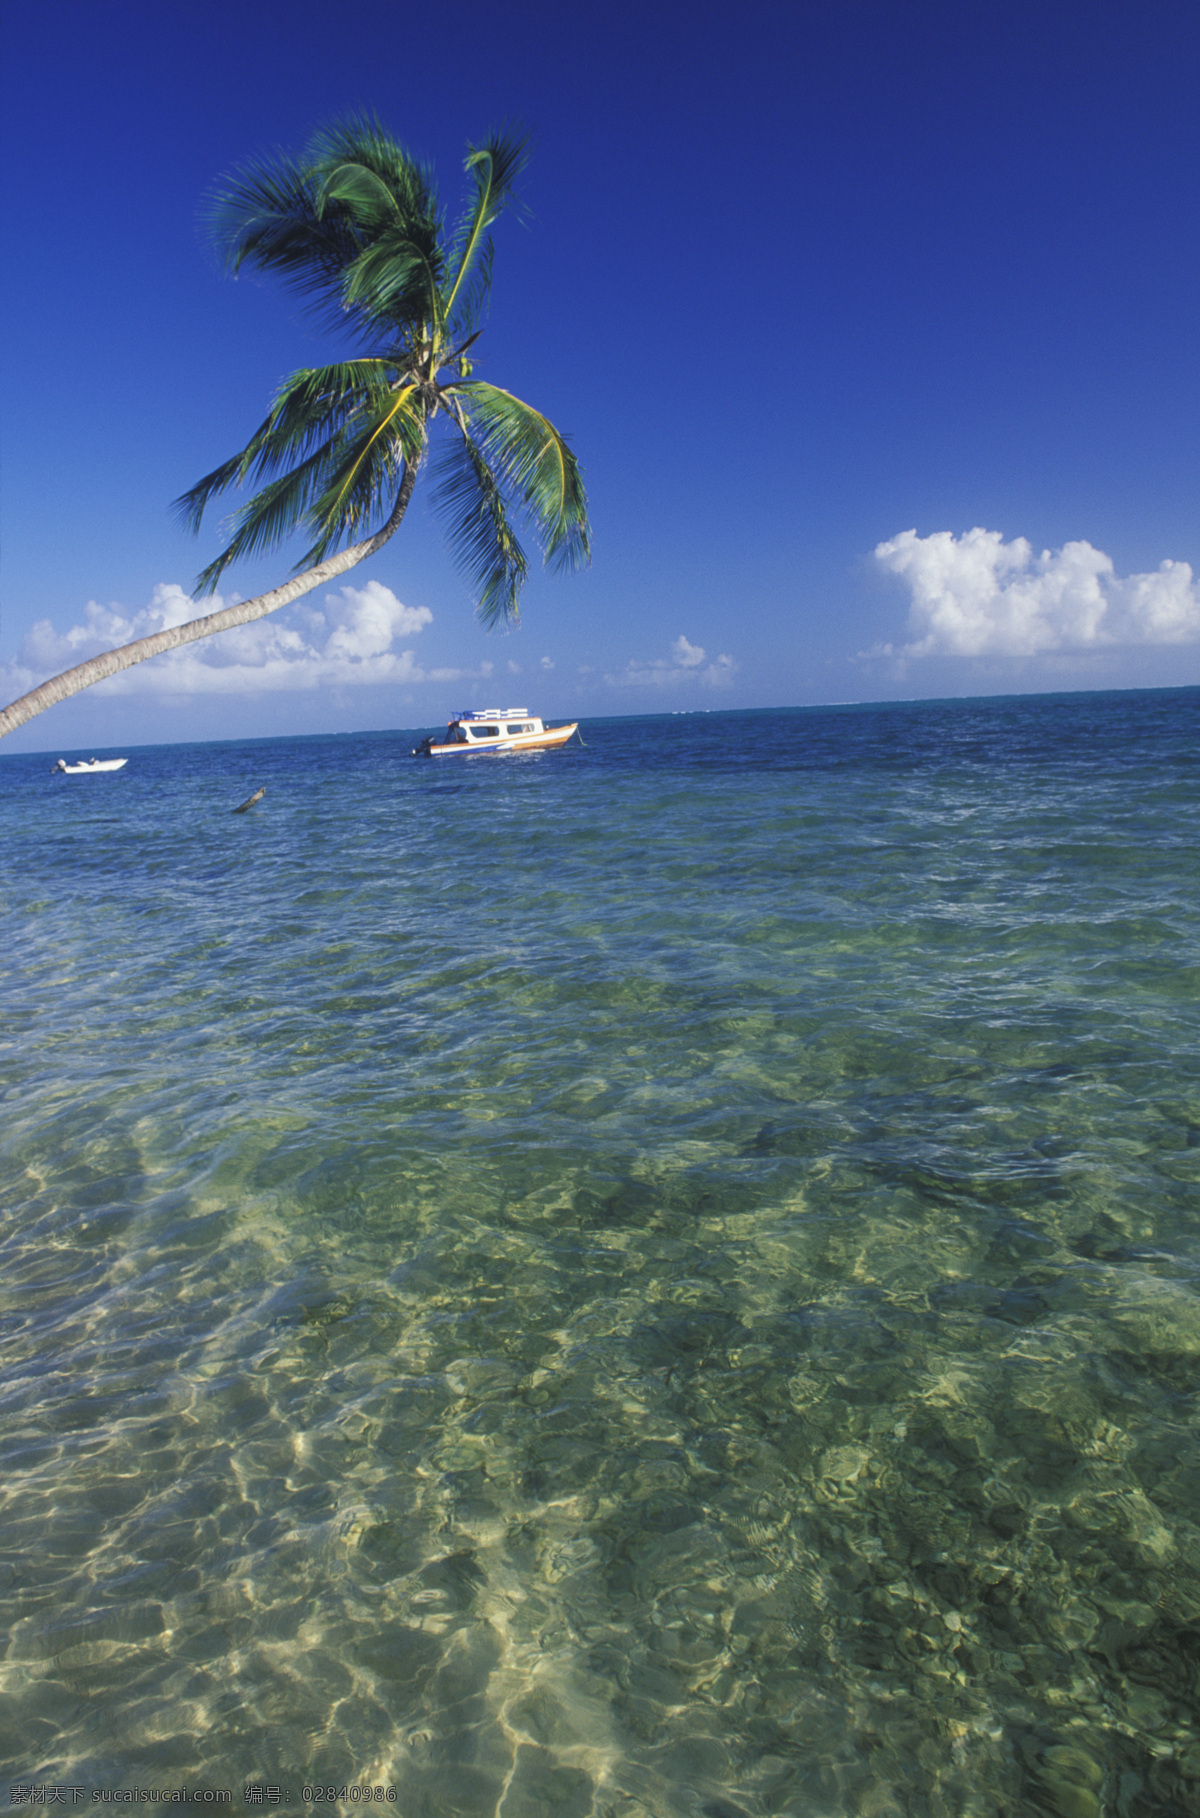 清澈 透明 加勒比 海岸 海水 大海 漂亮 美景 风景 岸边 加勒比海岸 高清图片 大海图片 风景图片